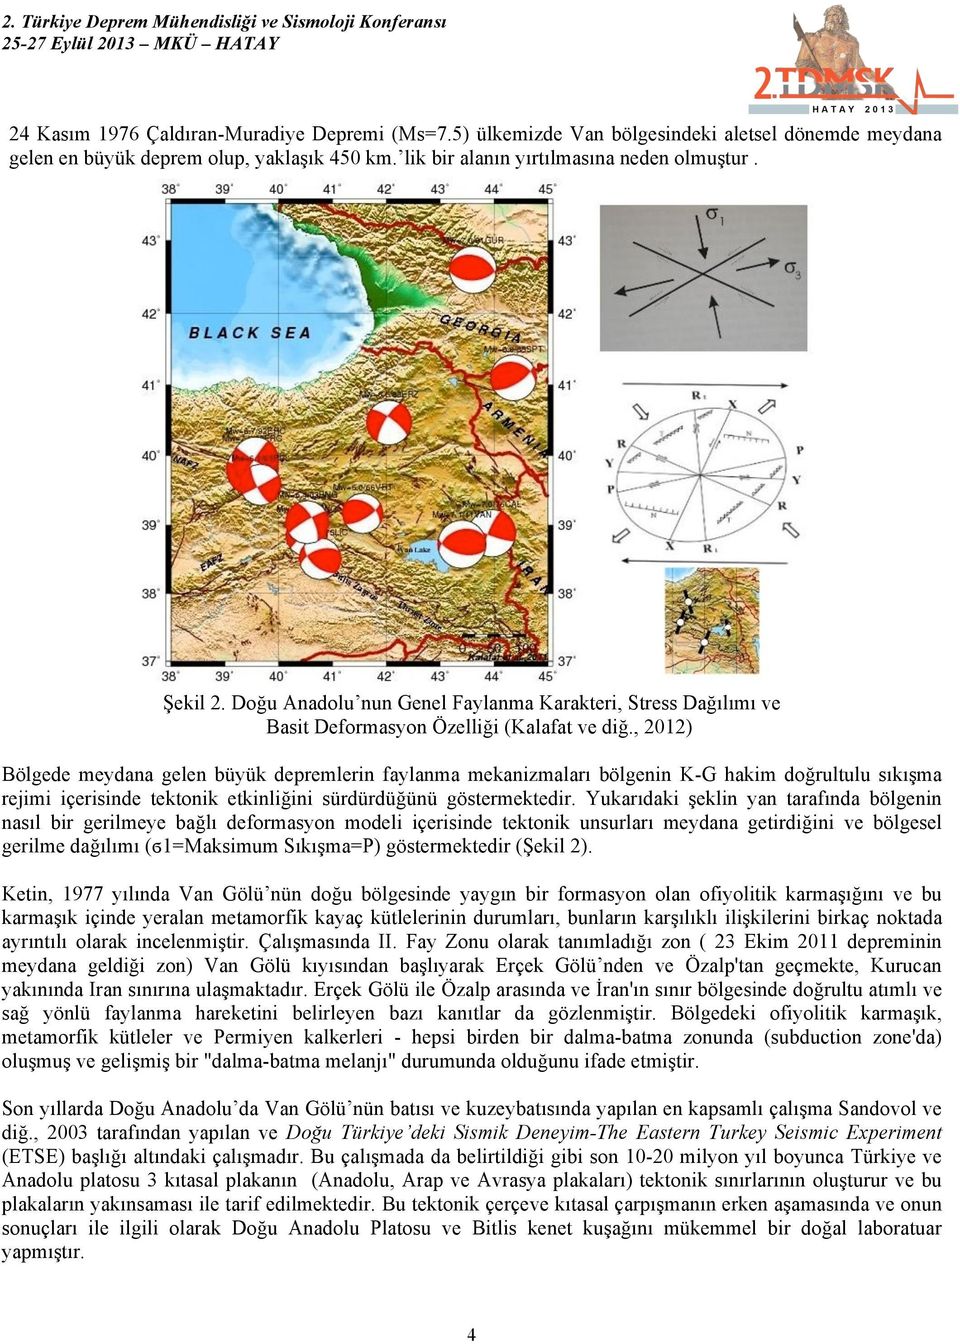 , 2012) Bölgede meydana gelen büyük depremlerin faylanma mekanizmaları bölgenin K-G hakim doğrultulu sıkışma rejimi içerisinde tektonik etkinliğini sürdürdüğünü göstermektedir.